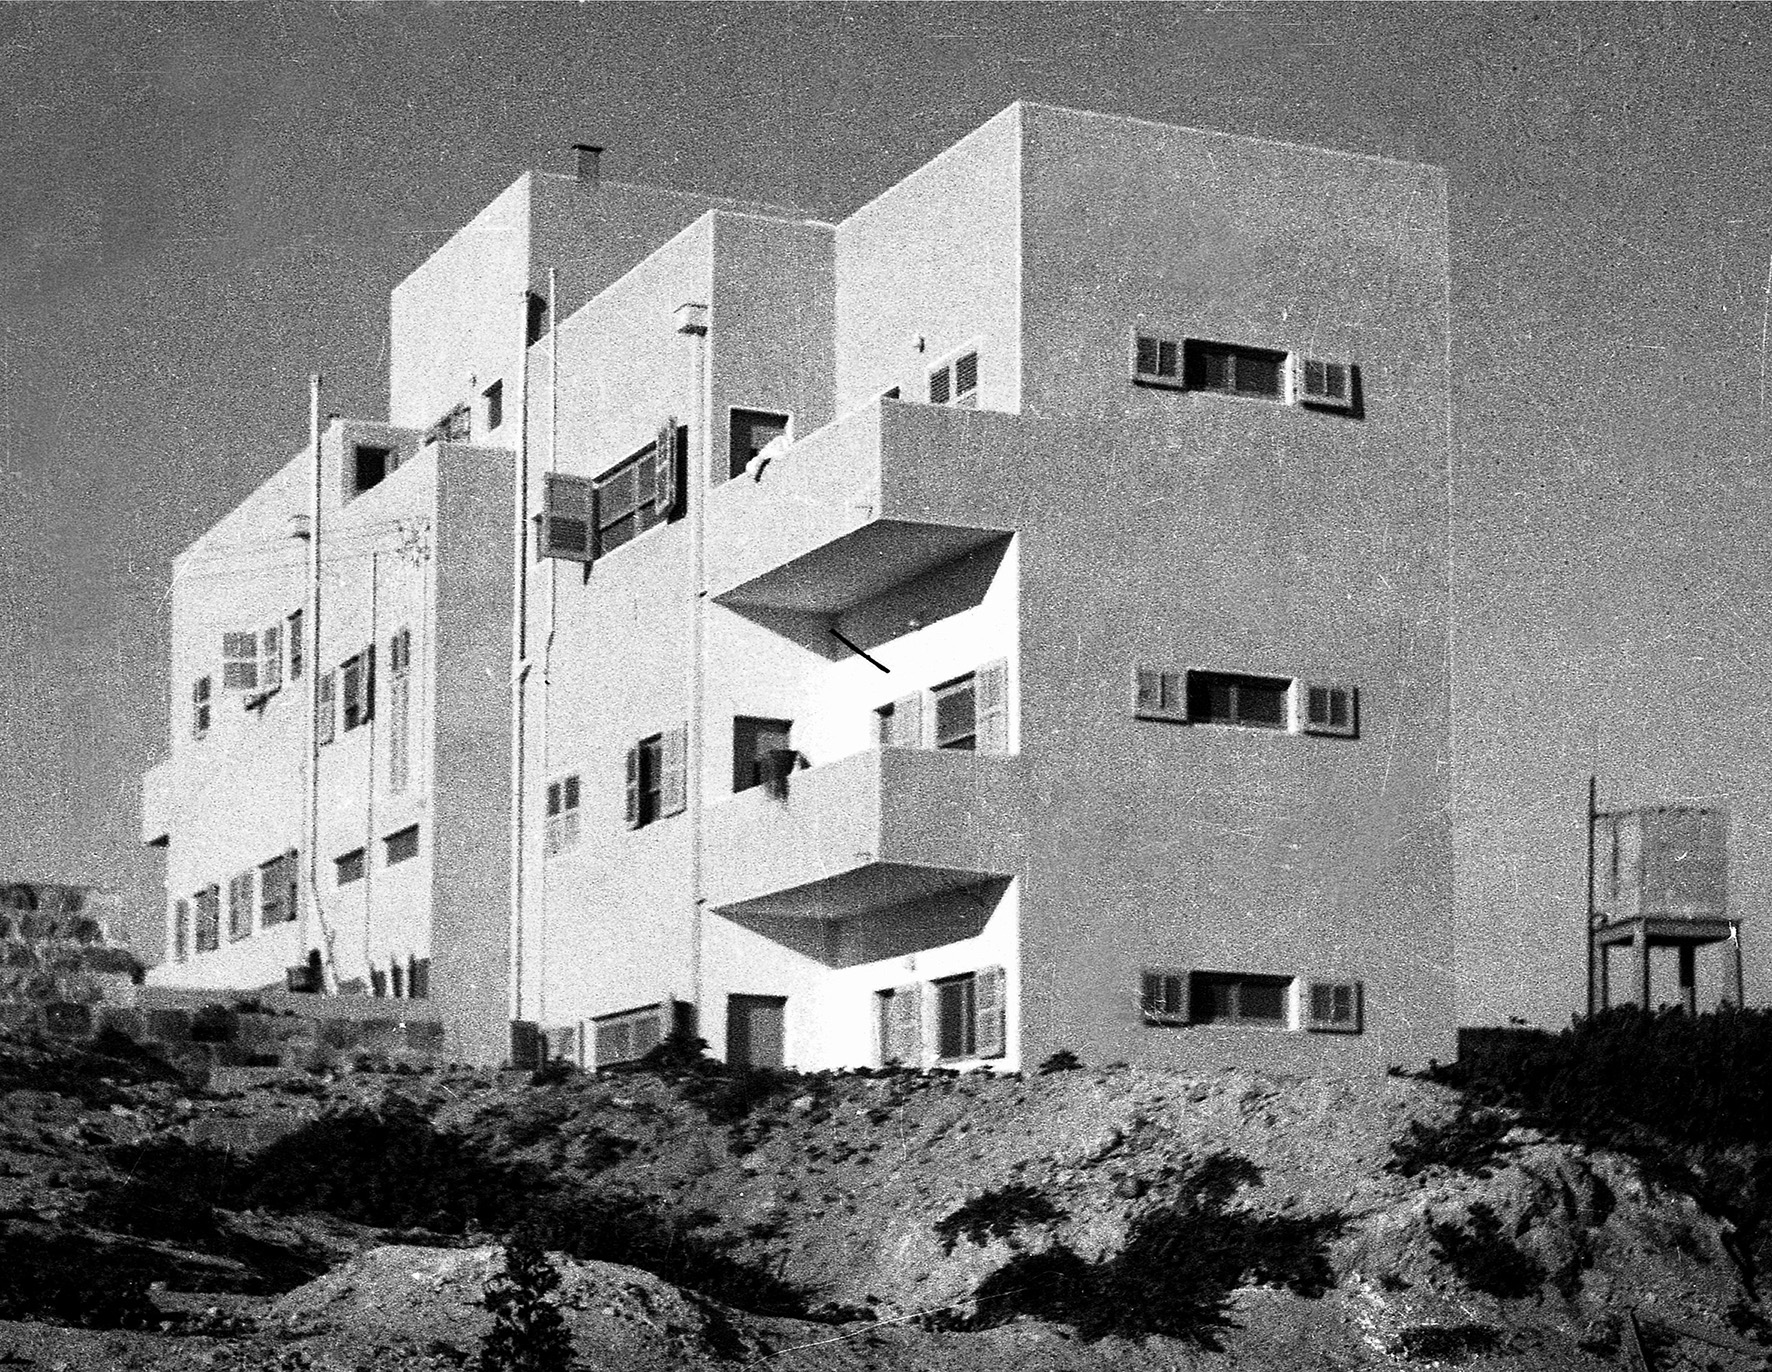 בית הילדים הגדול, מרפסות תלויות, תכנן יעקב פינקרפלד, הסגנון הבינלאומי, שנות 1930